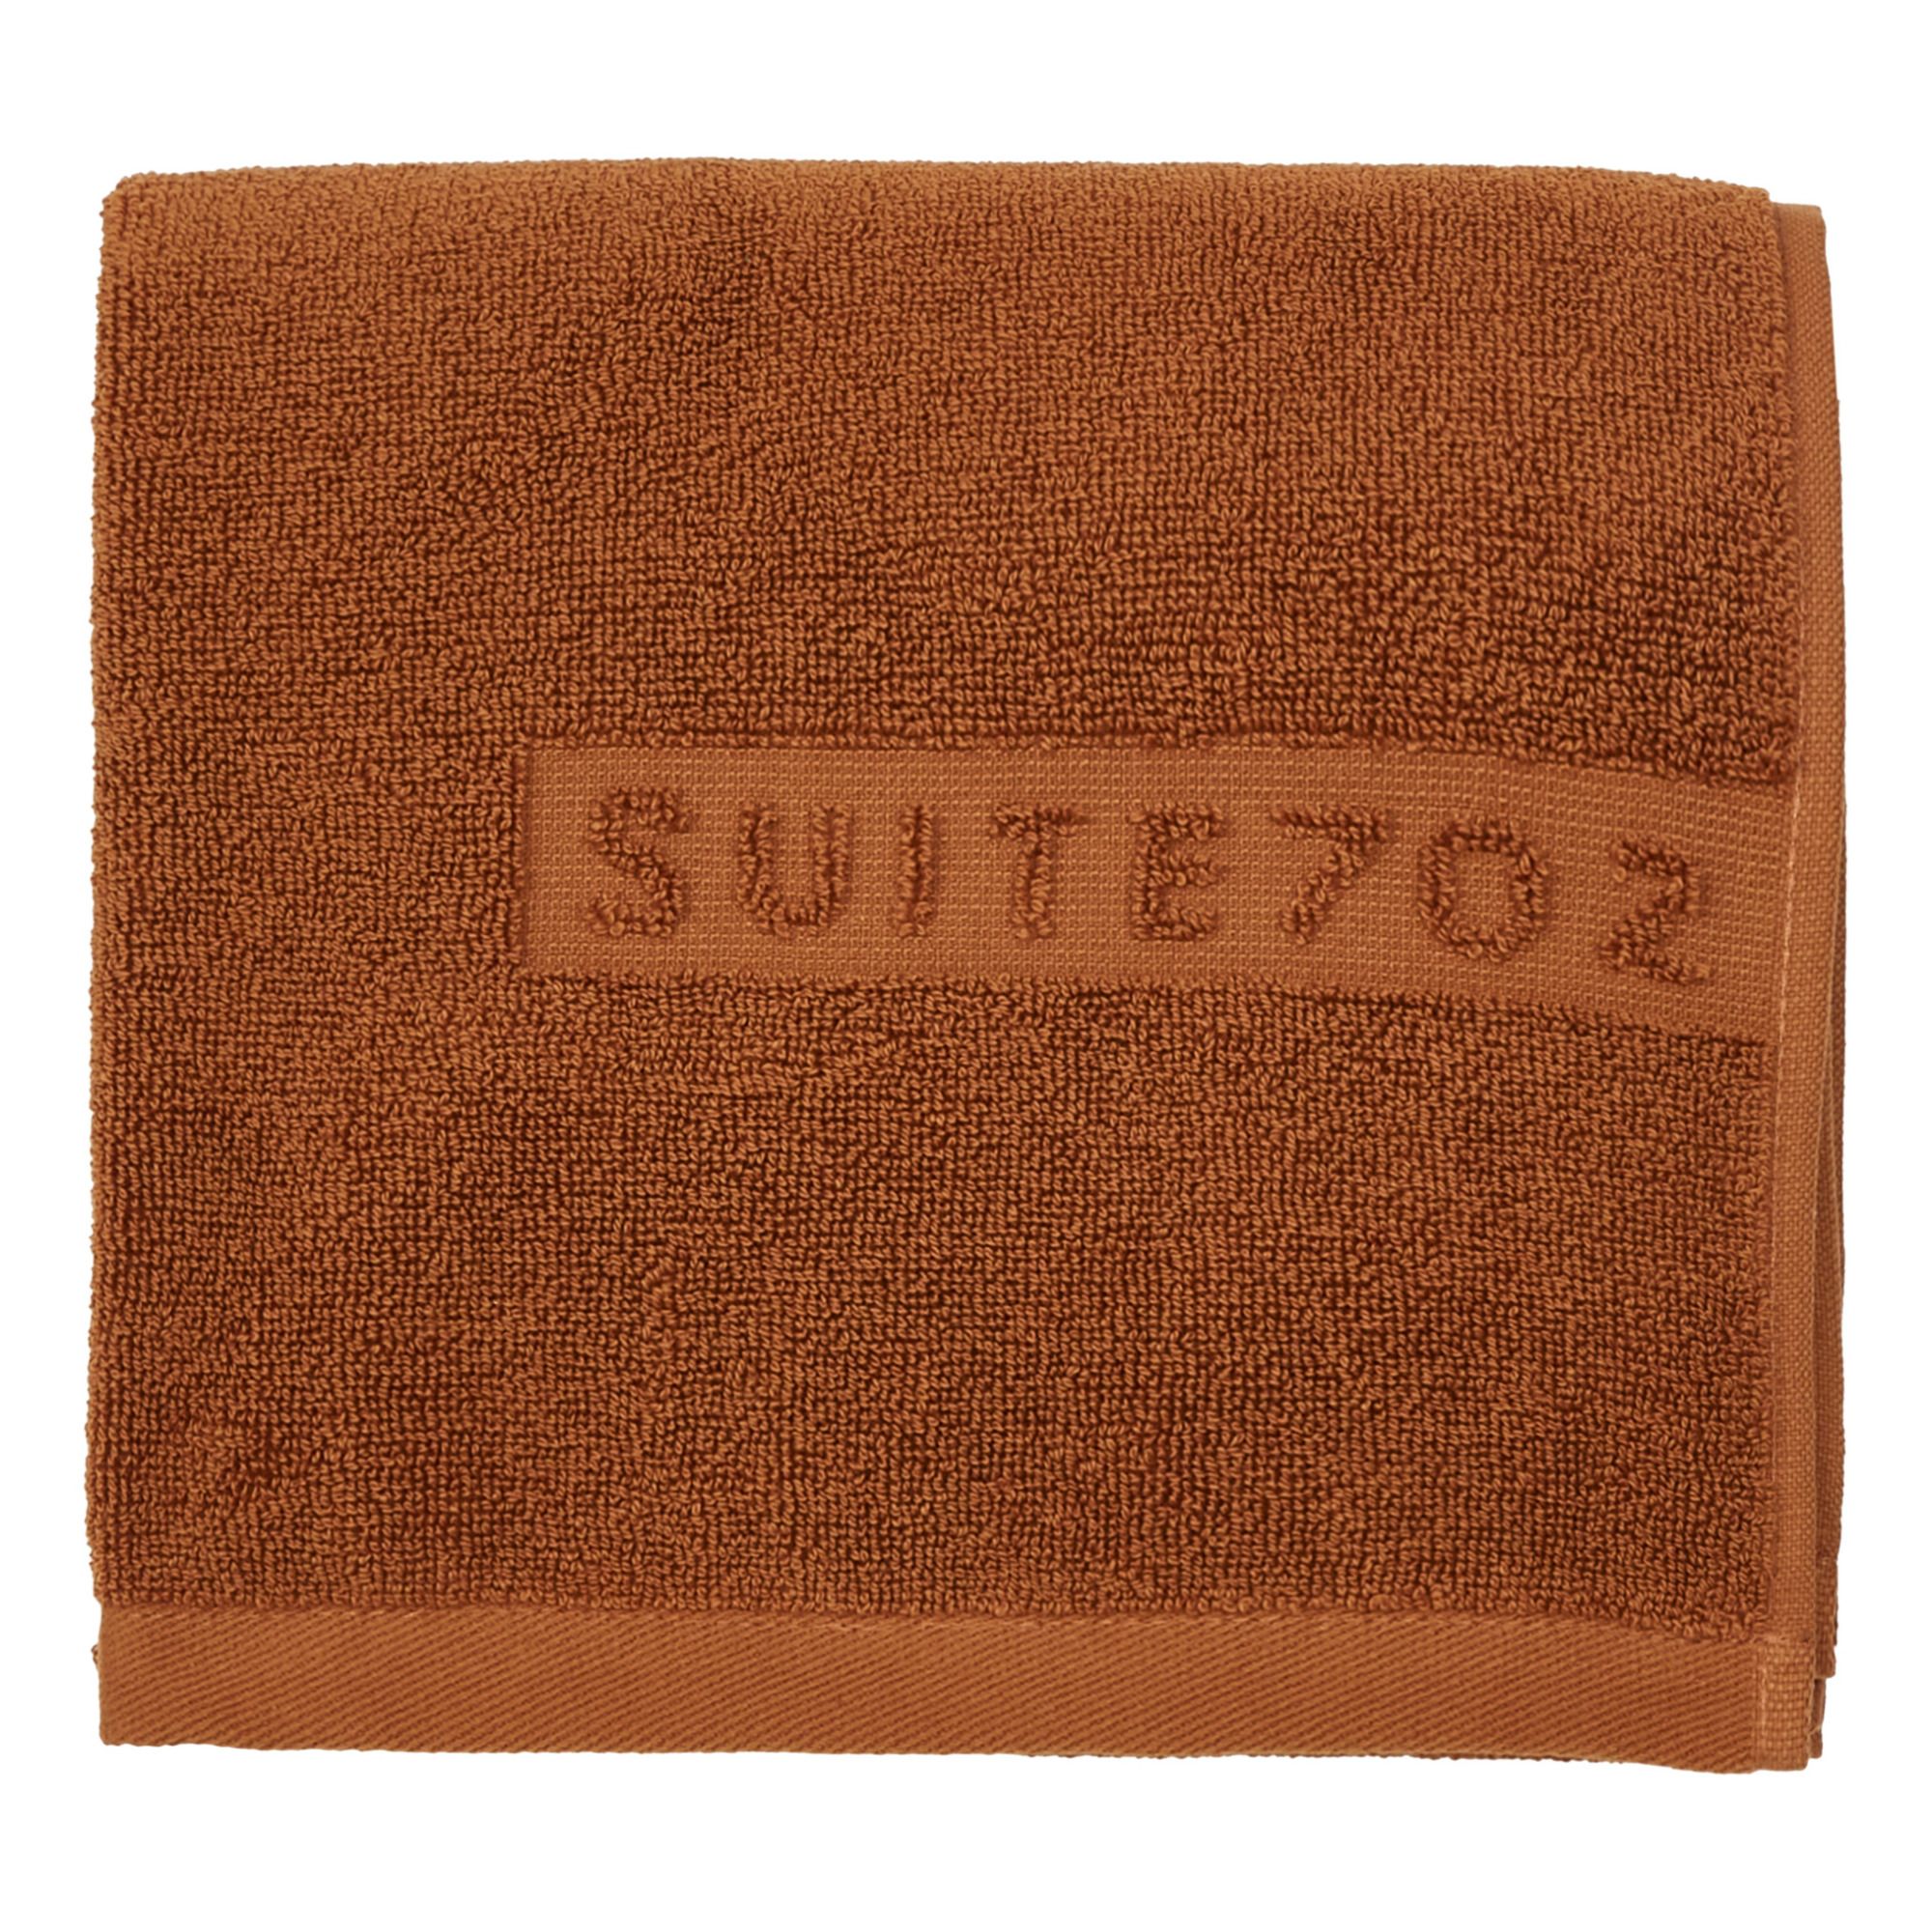 Suite 702 - Serviette de toilette en coton bio - Caramel